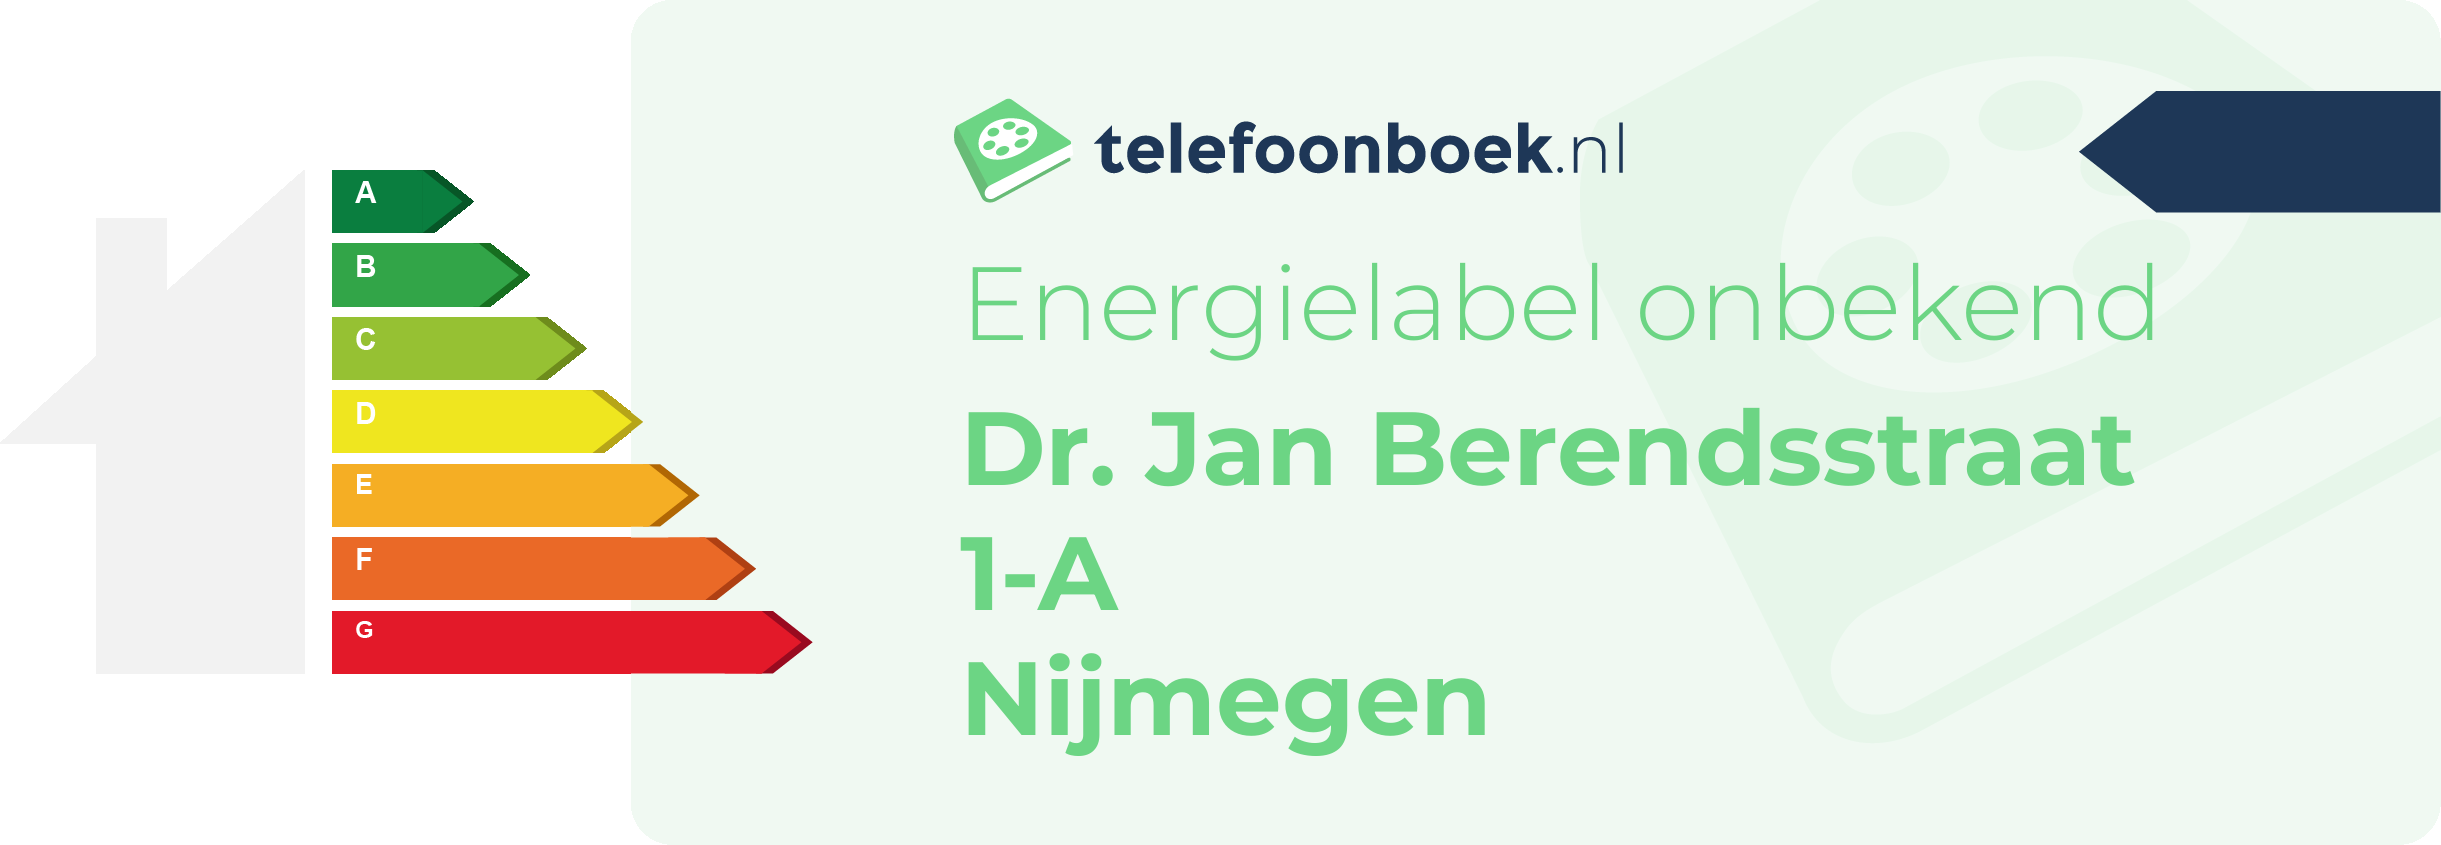 Energielabel Dr. Jan Berendsstraat 1-A Nijmegen